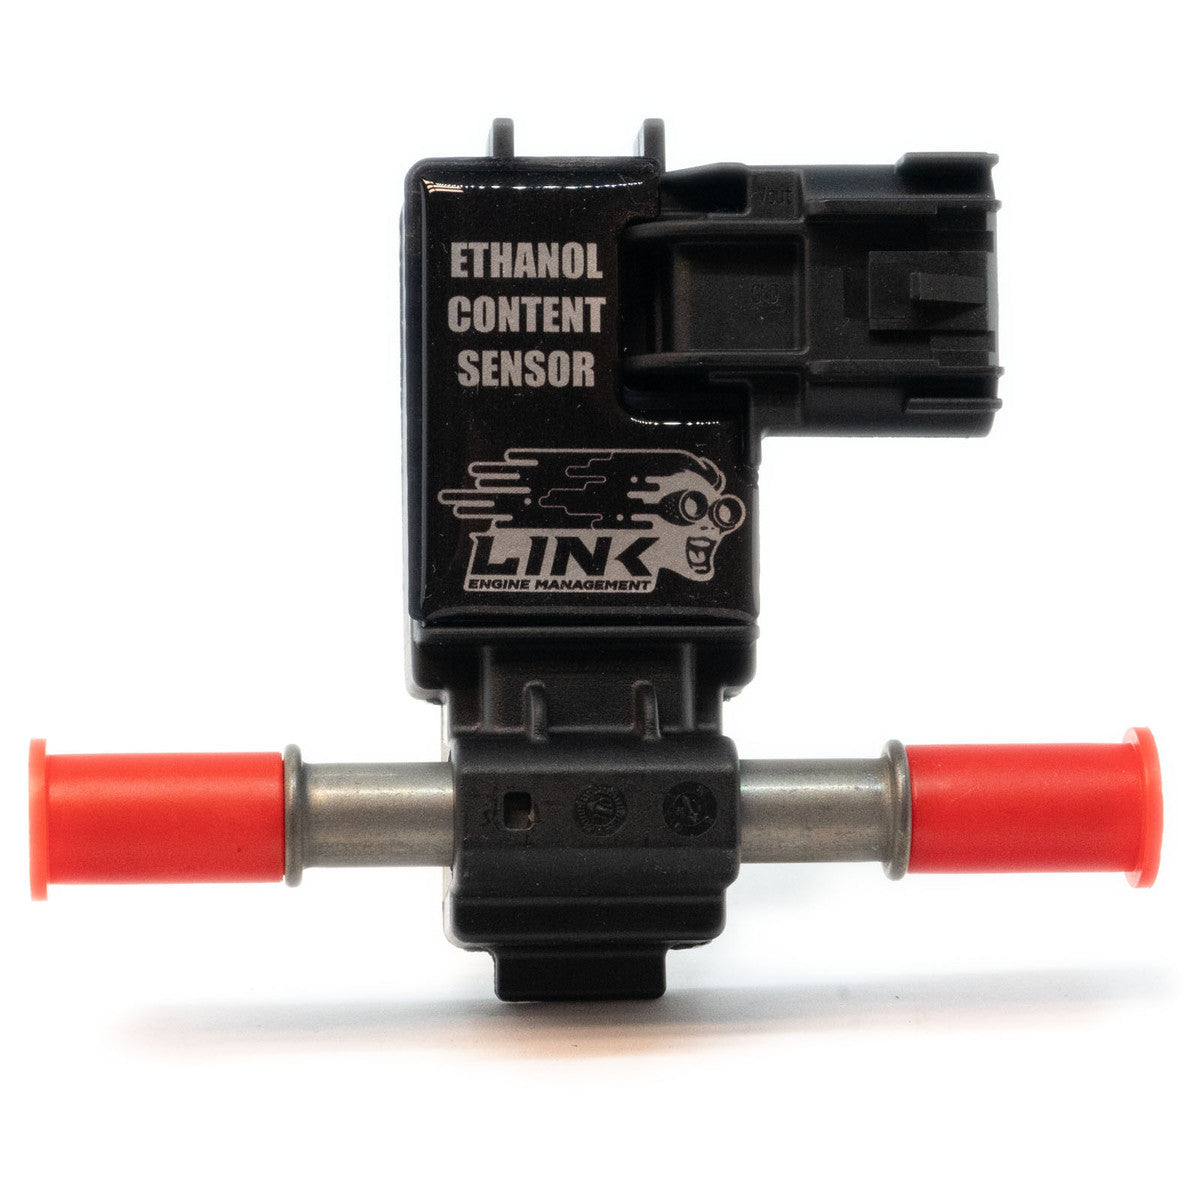 Link ECU Ethanol Content Sensor (ECS)